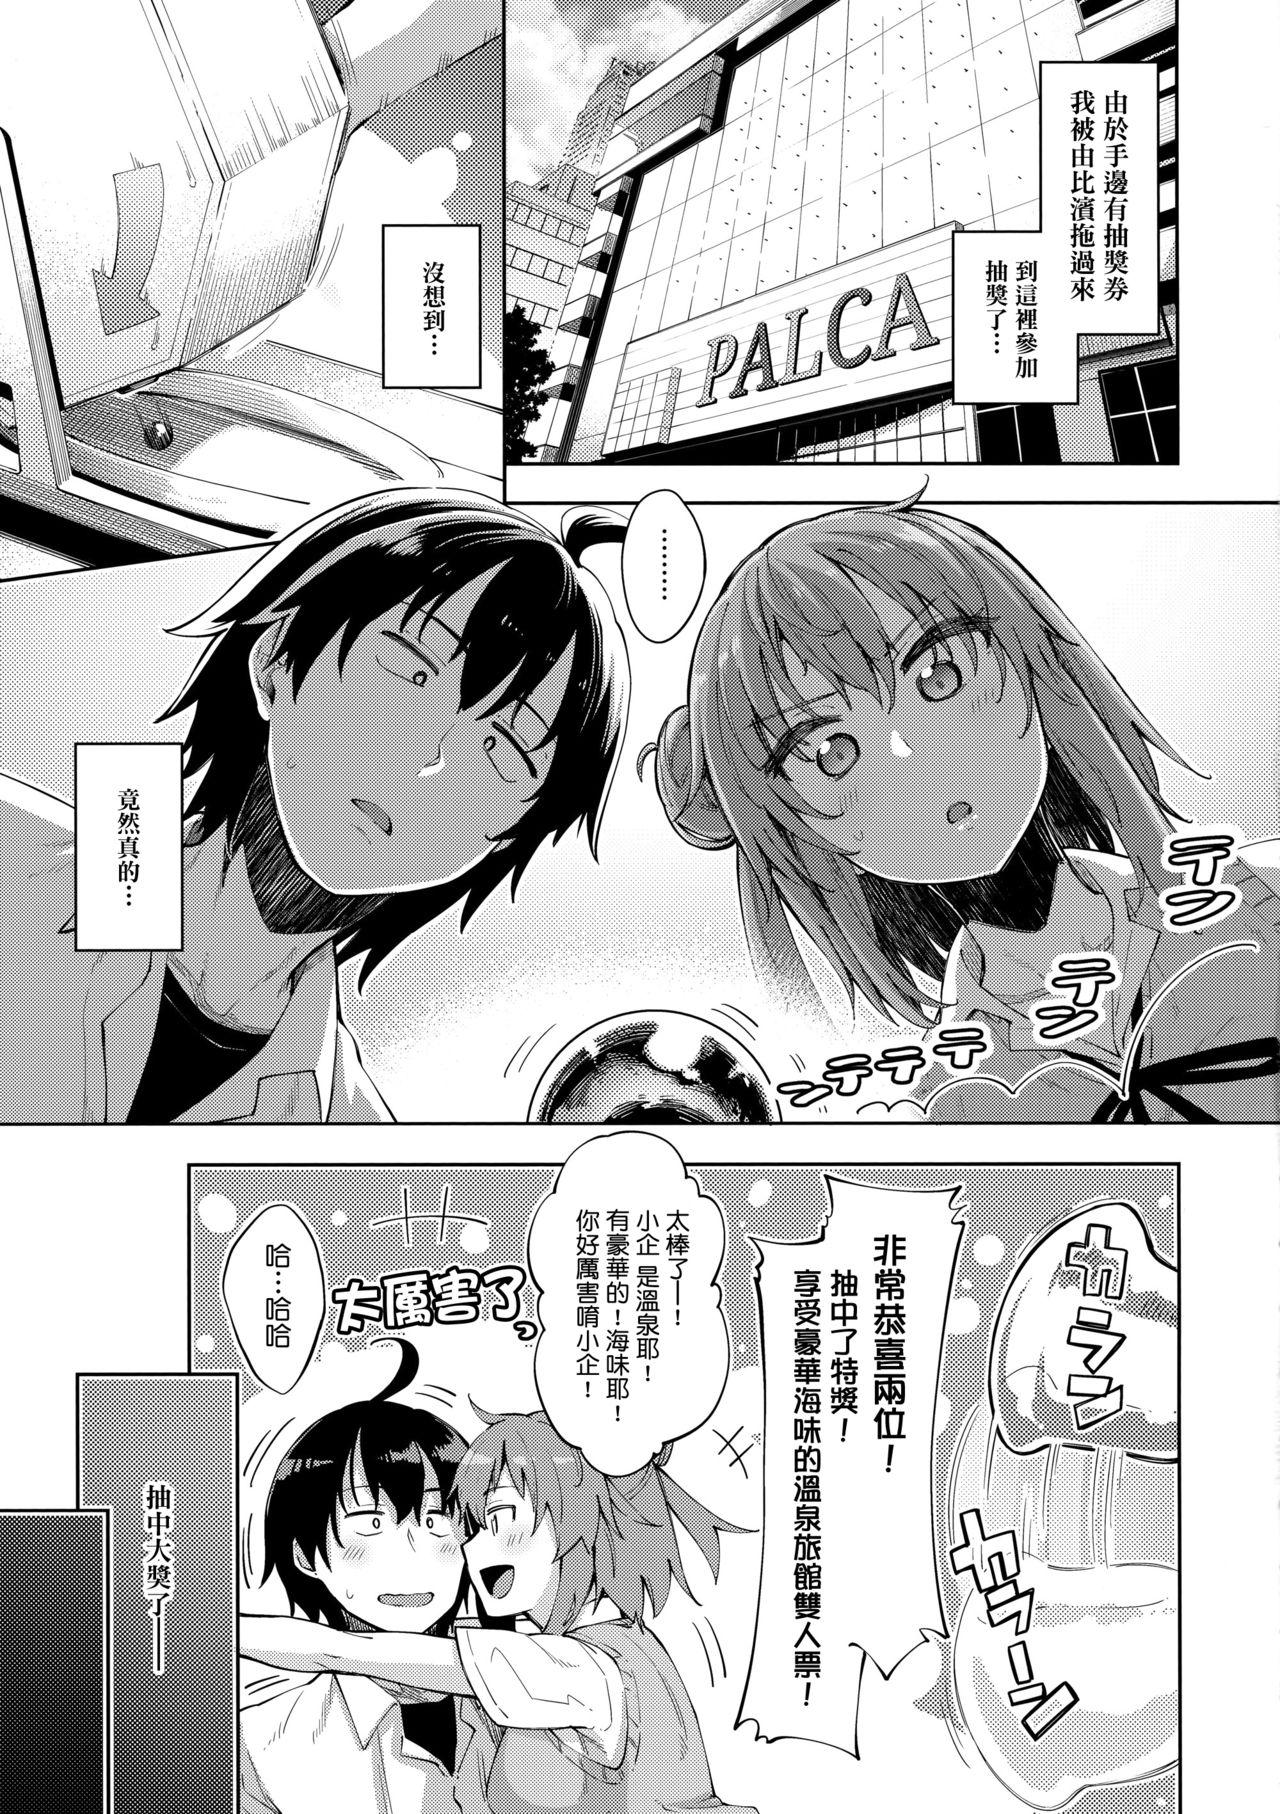 Doublepenetration LOVE STORY #05 - Yahari ore no seishun love come wa machigatteiru Dorm - Page 5